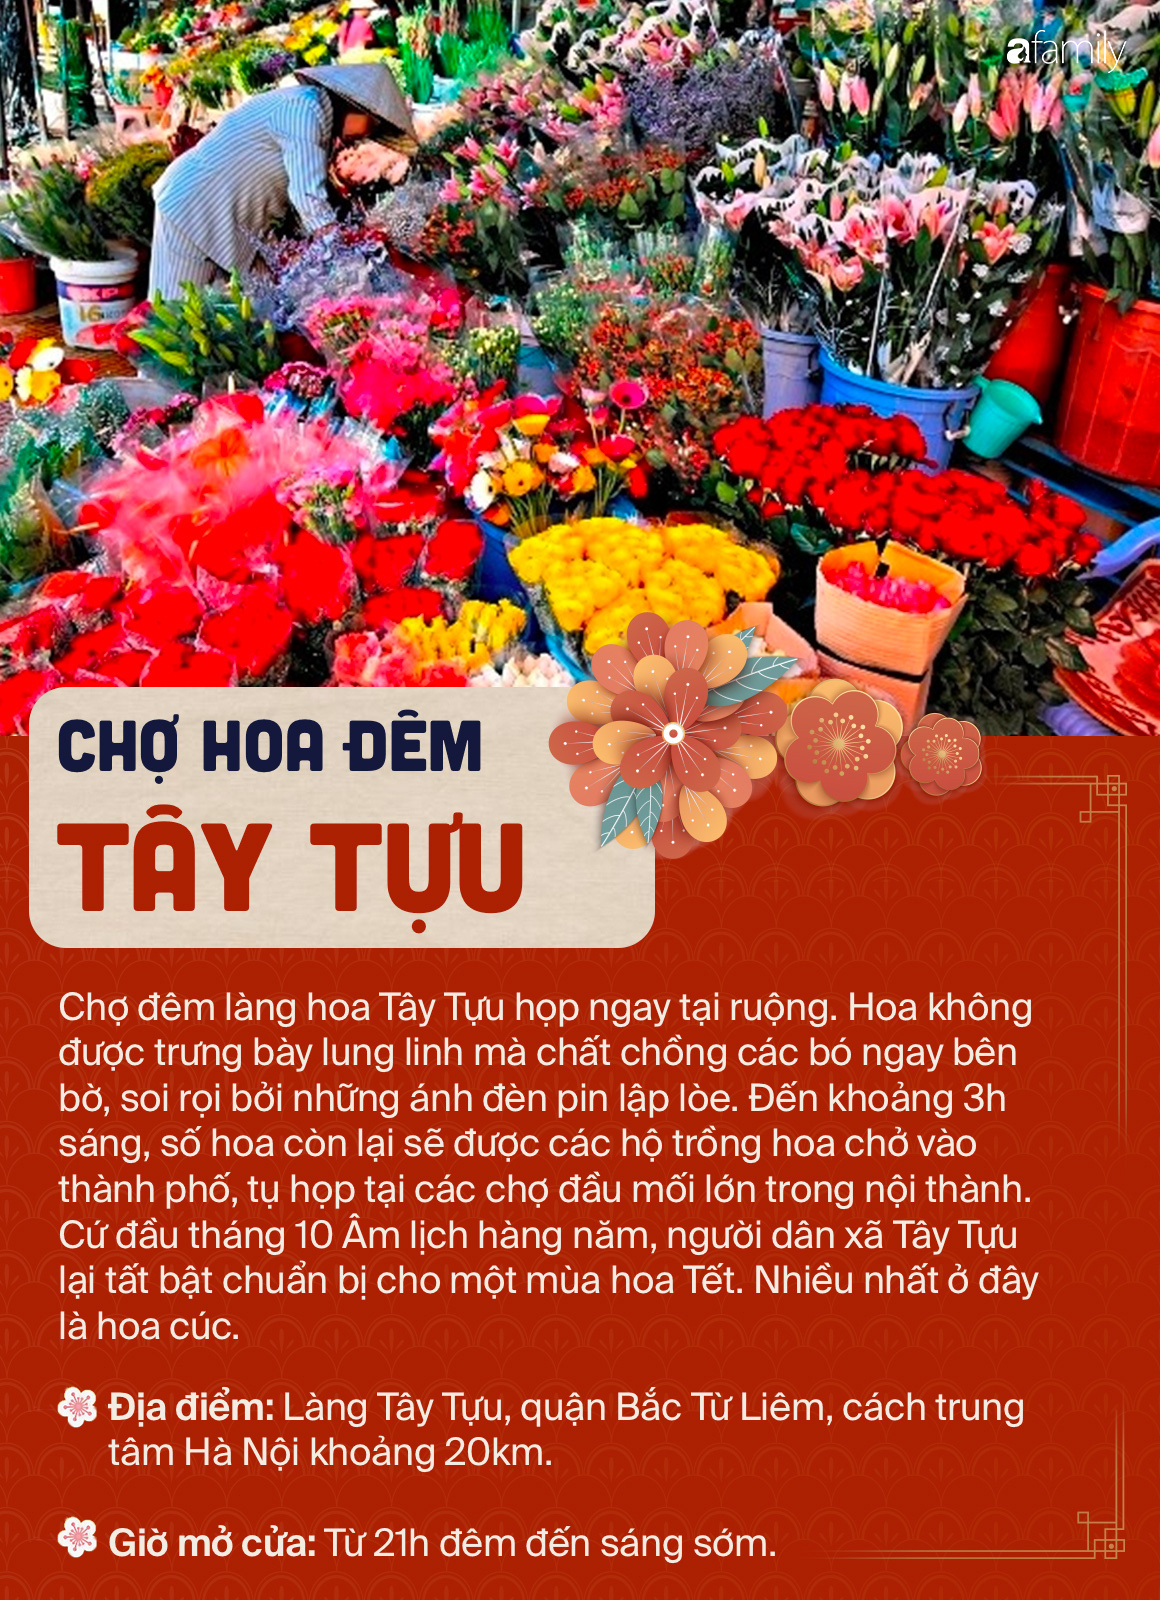 6 chợ hoa nổi tiếng xứ kinh kỳ mà bất cứ người Hà Nội cứ đến Tết là nhất định ghé mua - Ảnh 3.